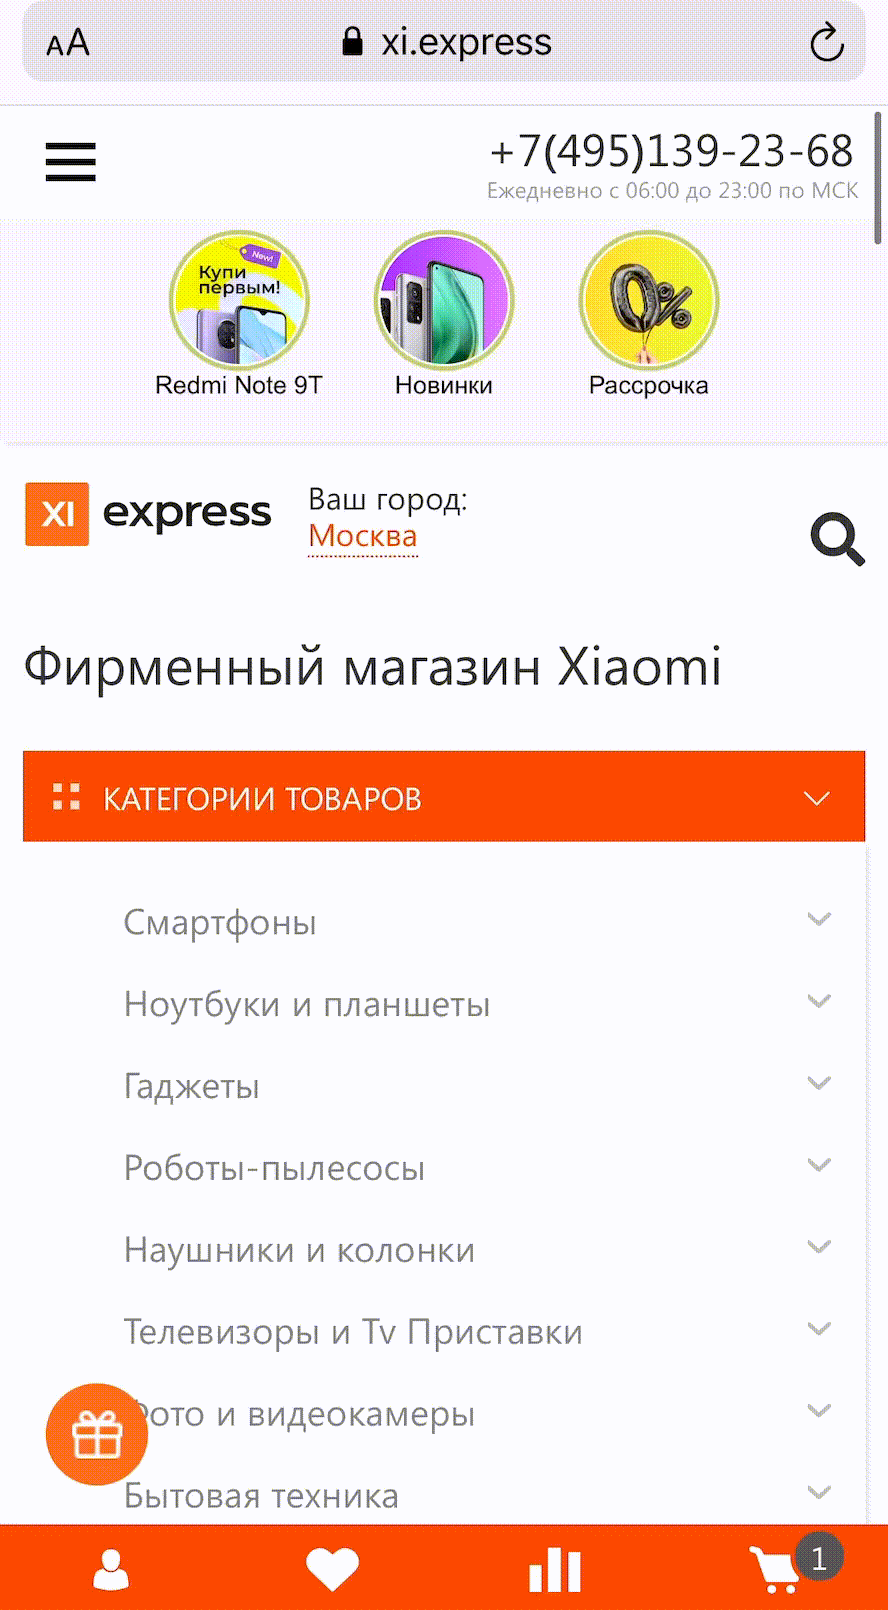 Xi.express